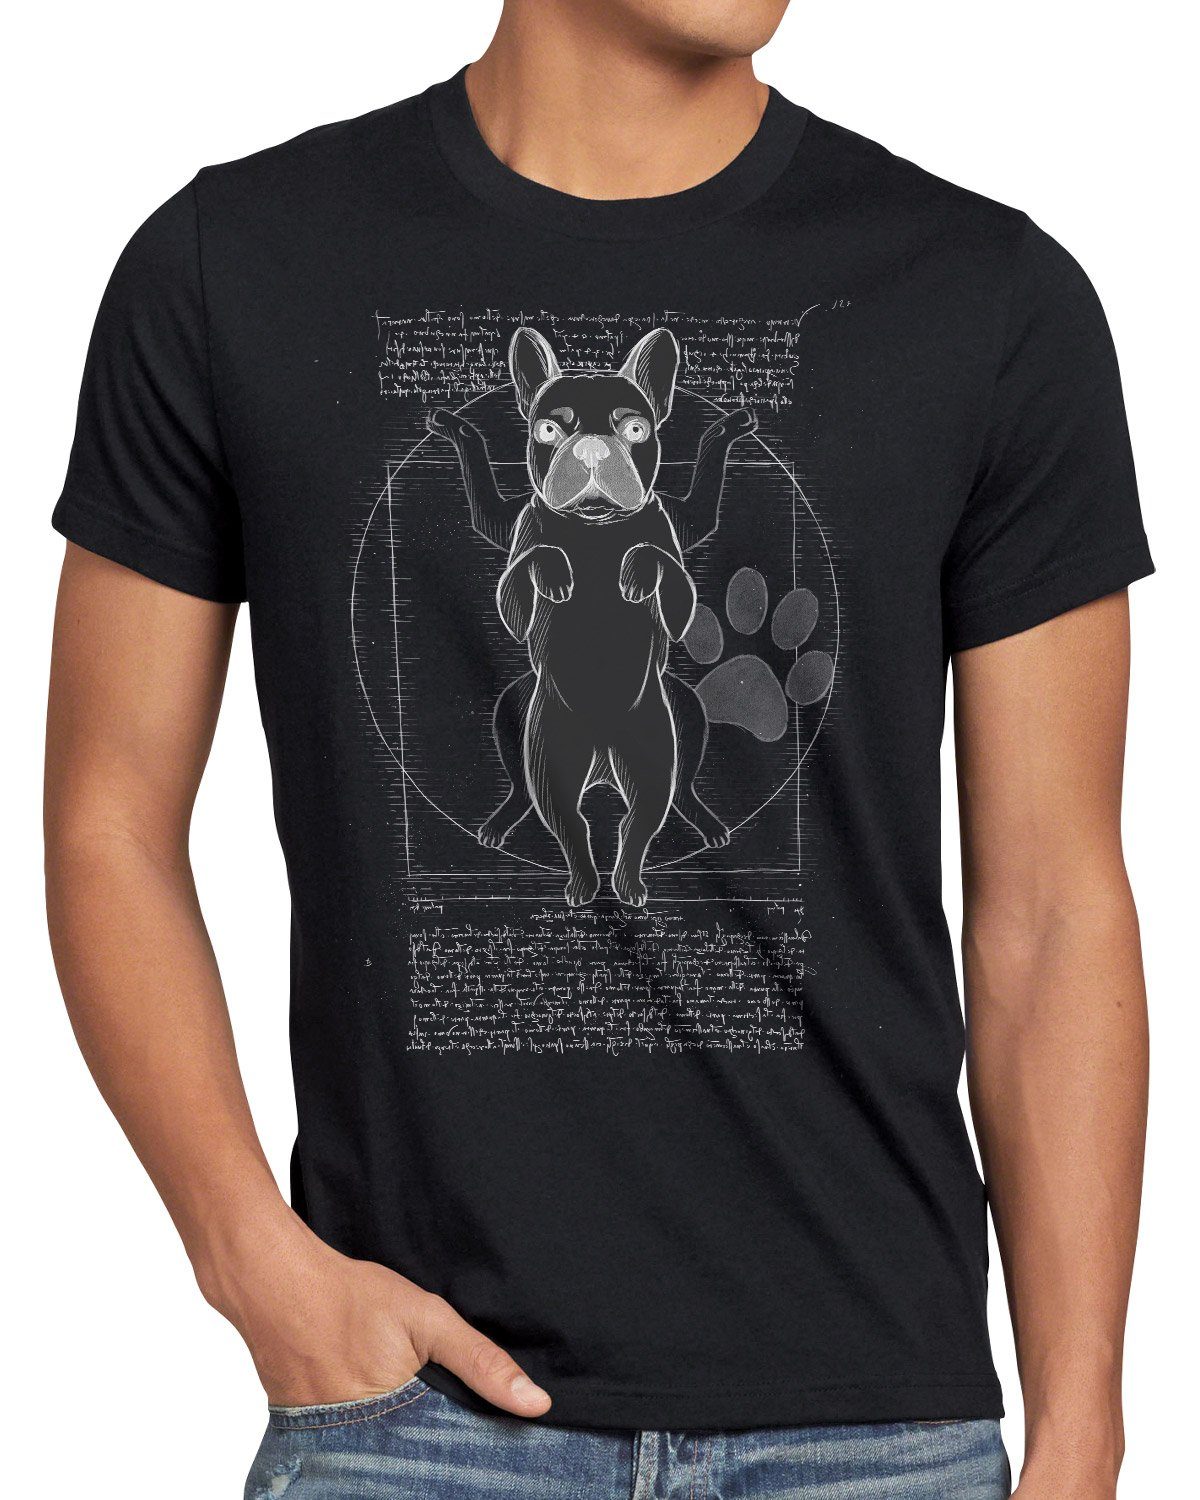 [Neu eingeführt] style3 Print-Shirt Herren T-Shirt französische bulldogge schwarz hund Vitruvianischer Frenchie